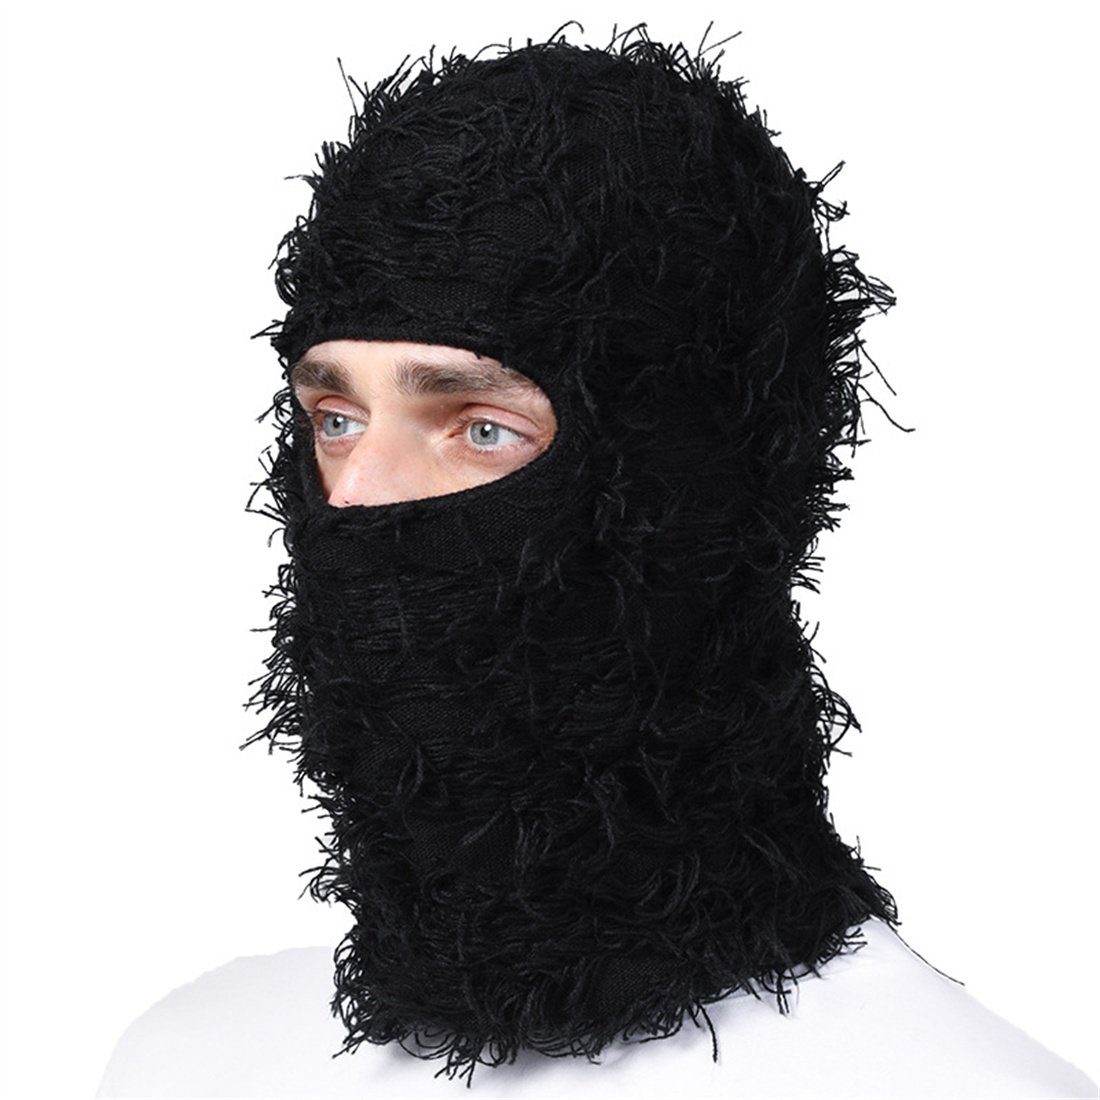 Kopfbedeckungen, DÖRÖY Schwarz Party-Masken Balaclava-Mützen, Winterliche warme Sturmhaube